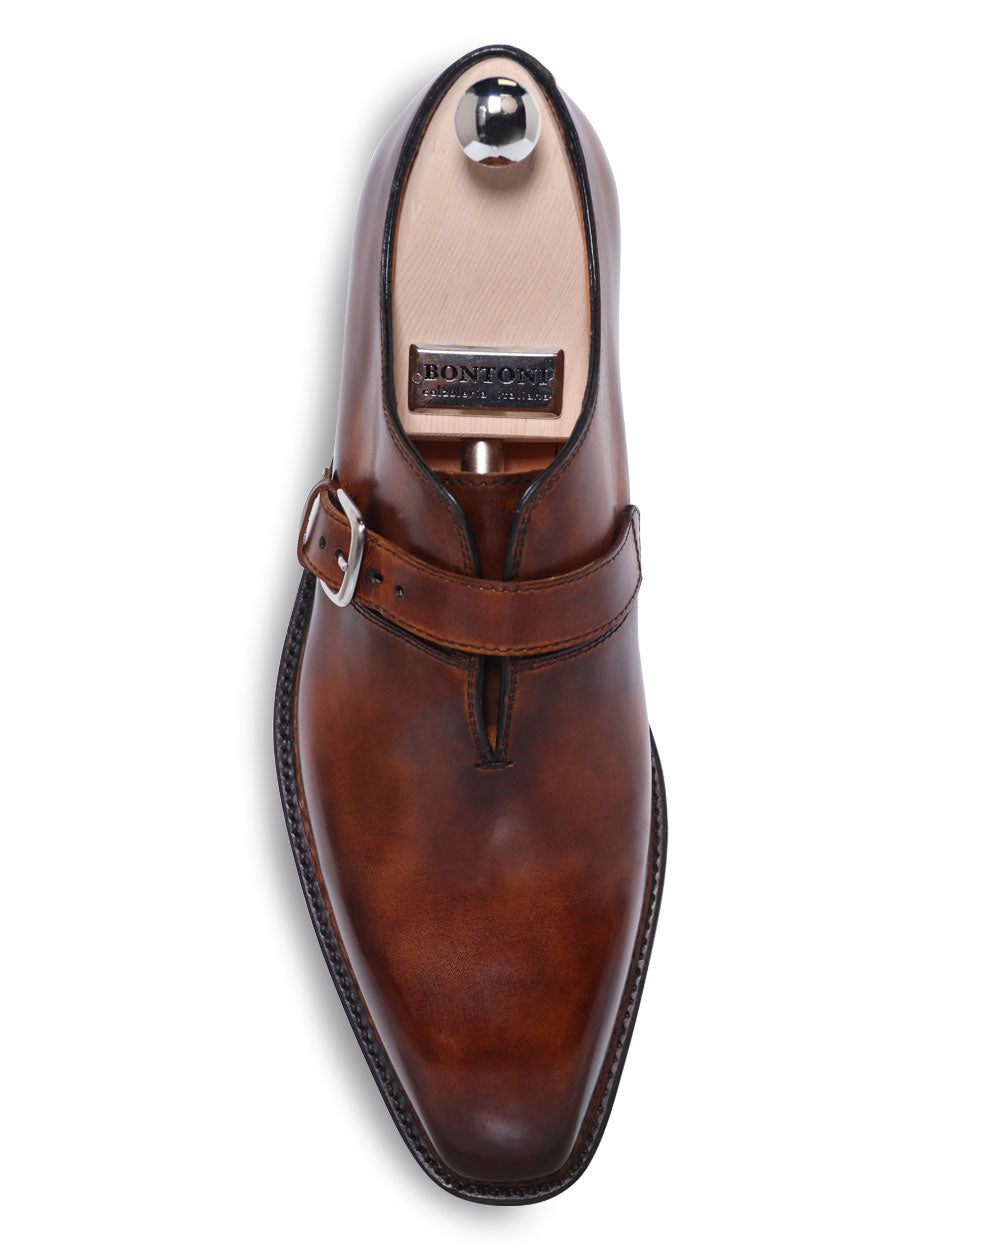 Giallo Scuro Leather Monk Strap Shoe